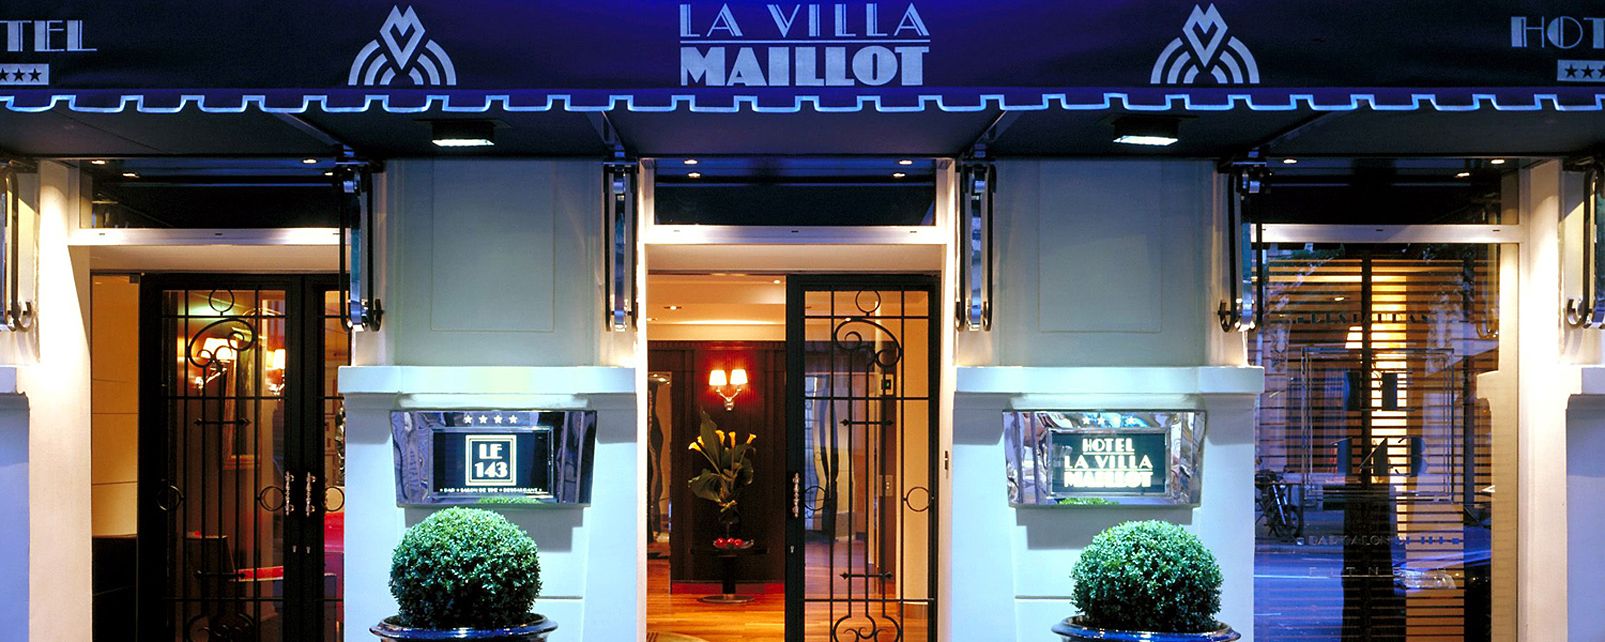 Hotel La Villa Maillot